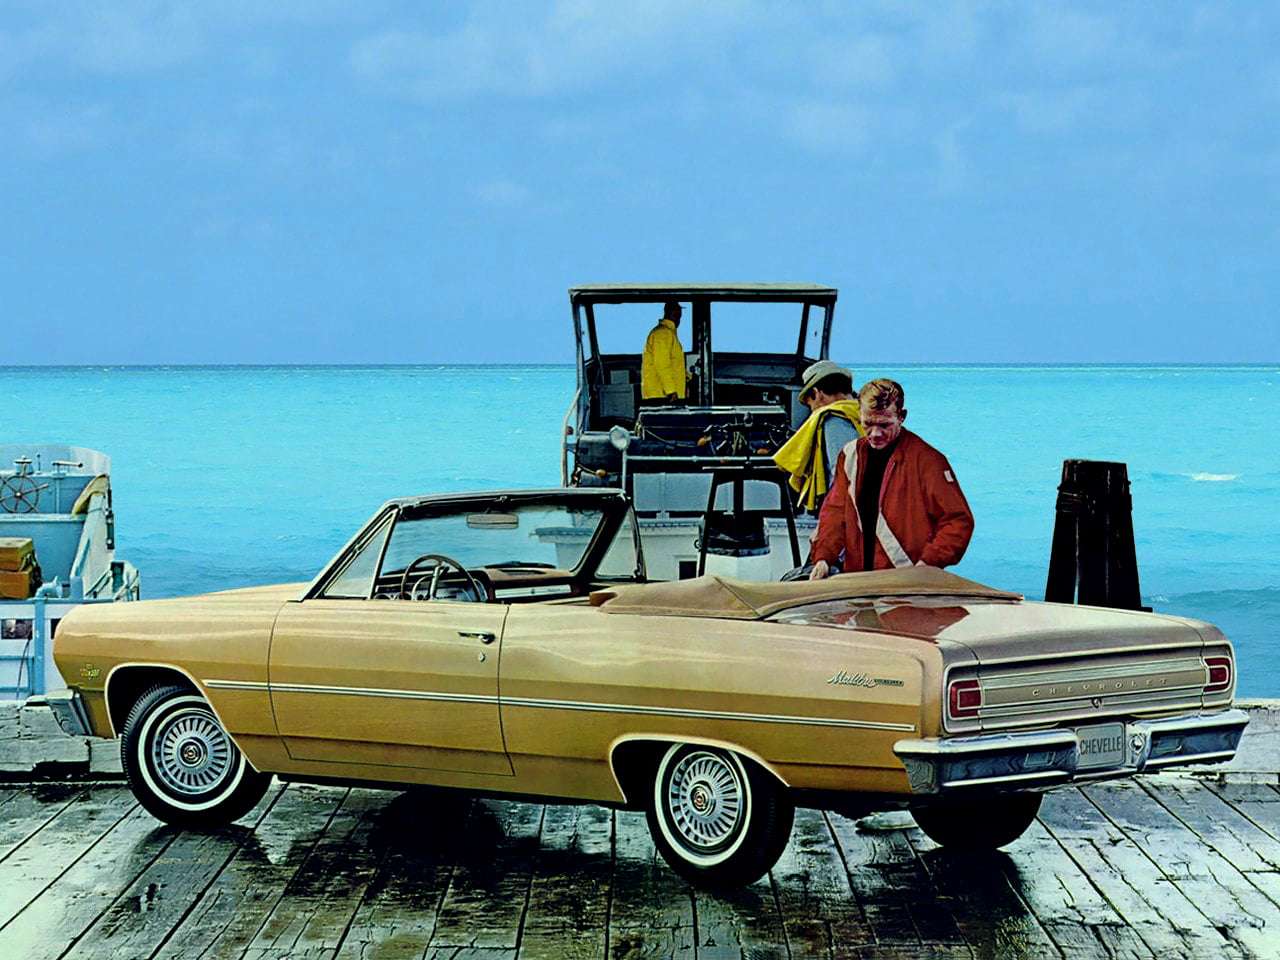 1965 Chevrolet Chevelle Malibu Cabriolet pussel på nätet